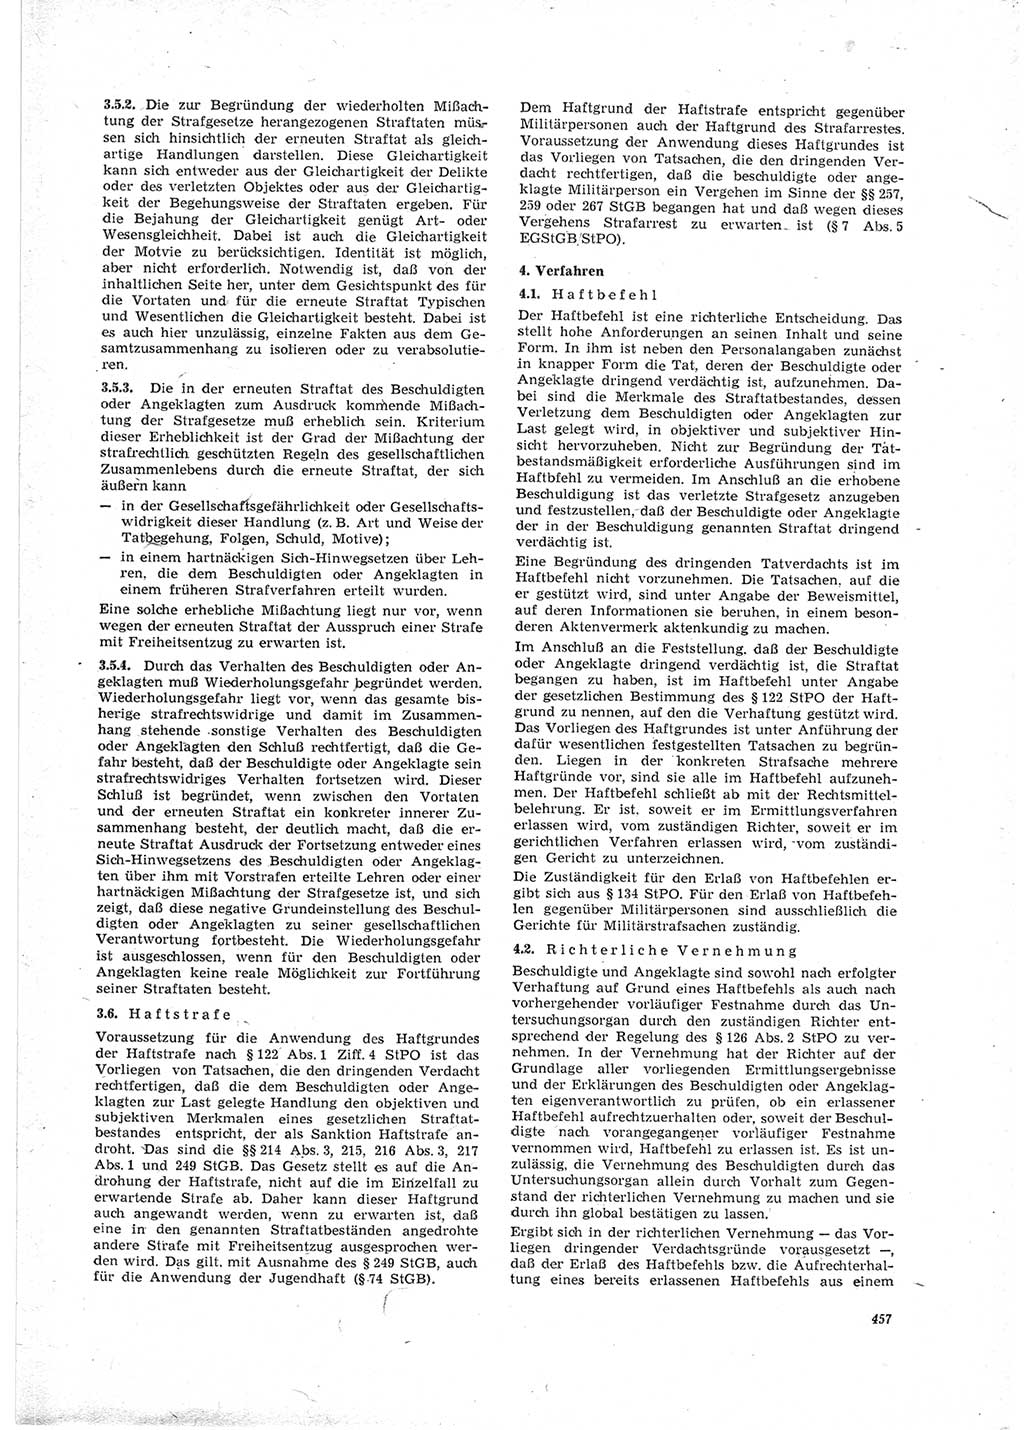 Neue Justiz (NJ), Zeitschrift für Recht und Rechtswissenschaft [Deutsche Demokratische Republik (DDR)], 23. Jahrgang 1969, Seite 457 (NJ DDR 1969, S. 457)